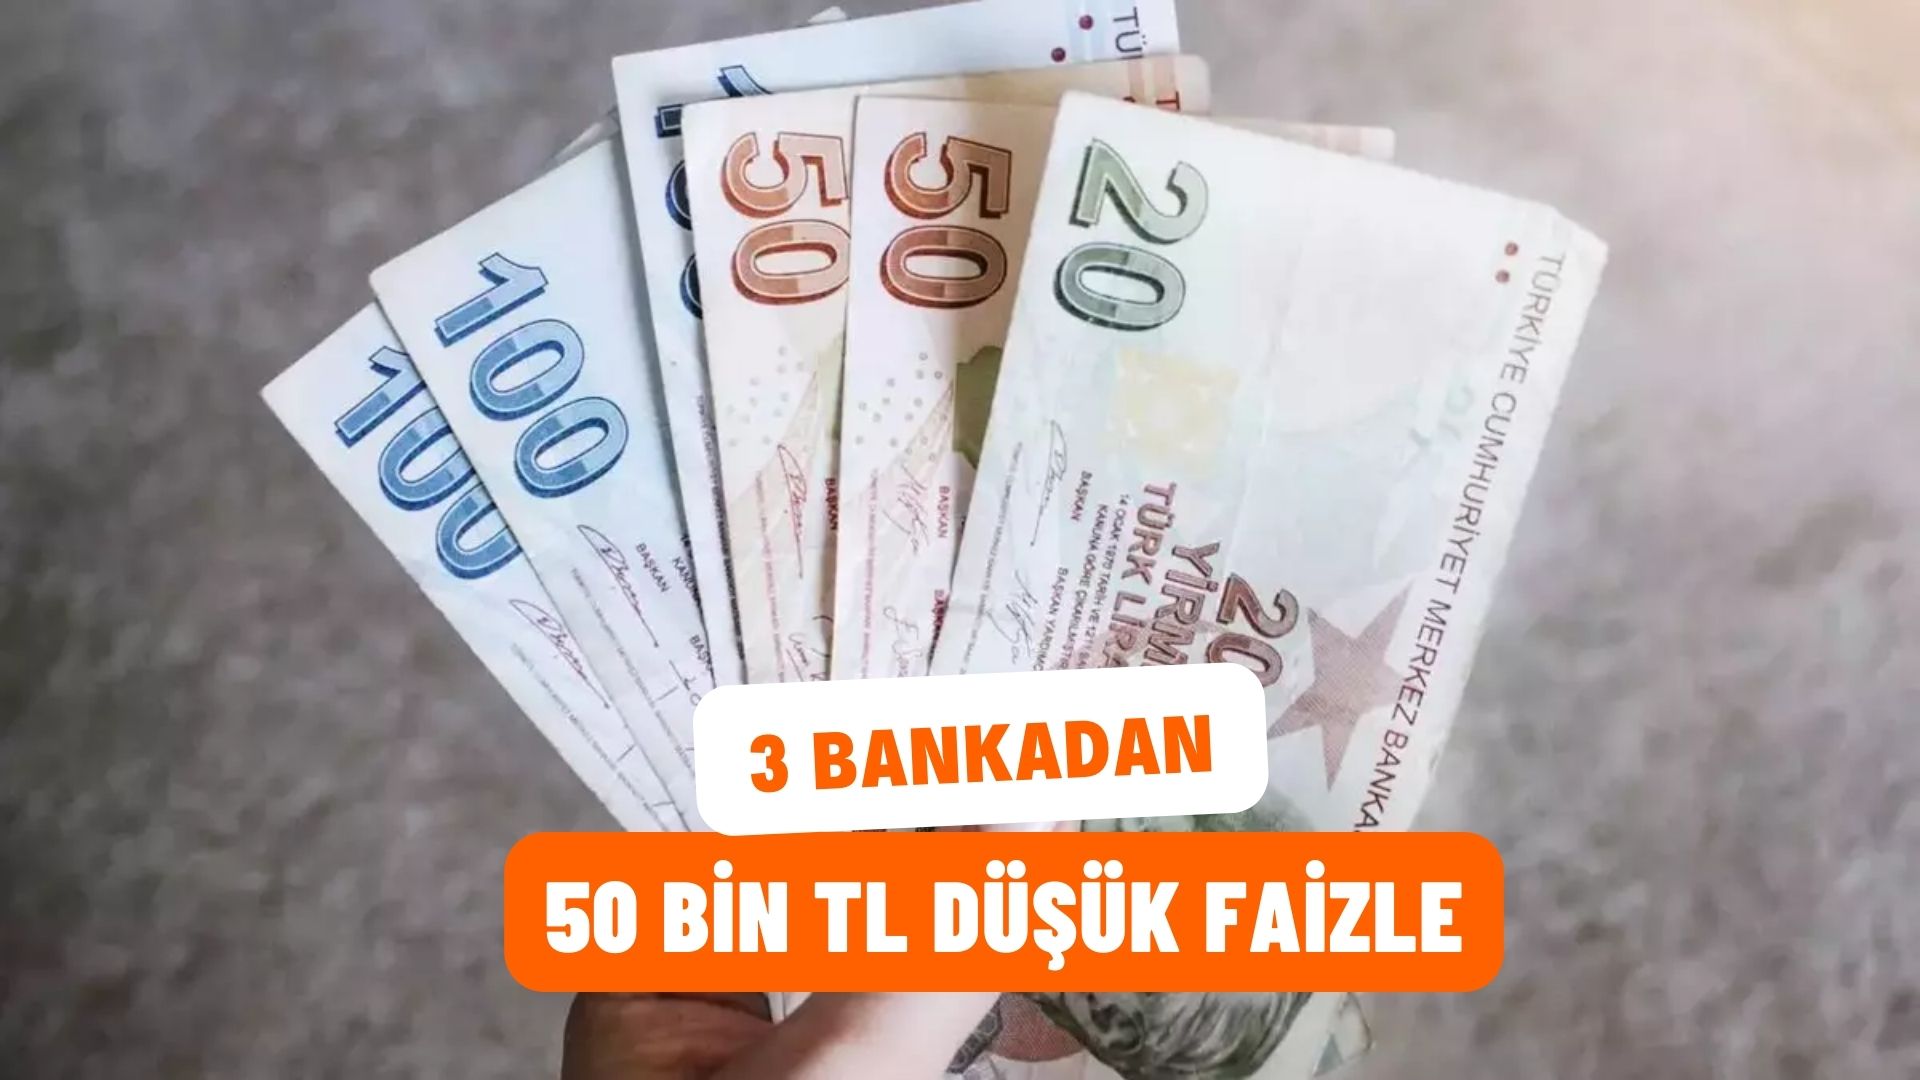 Garanti BBVA, Akbank ve Halkbank’tan 50 bin TL’ye Kadar Düşük Faizle Kredi! Her Başvuru Onaylanıyor